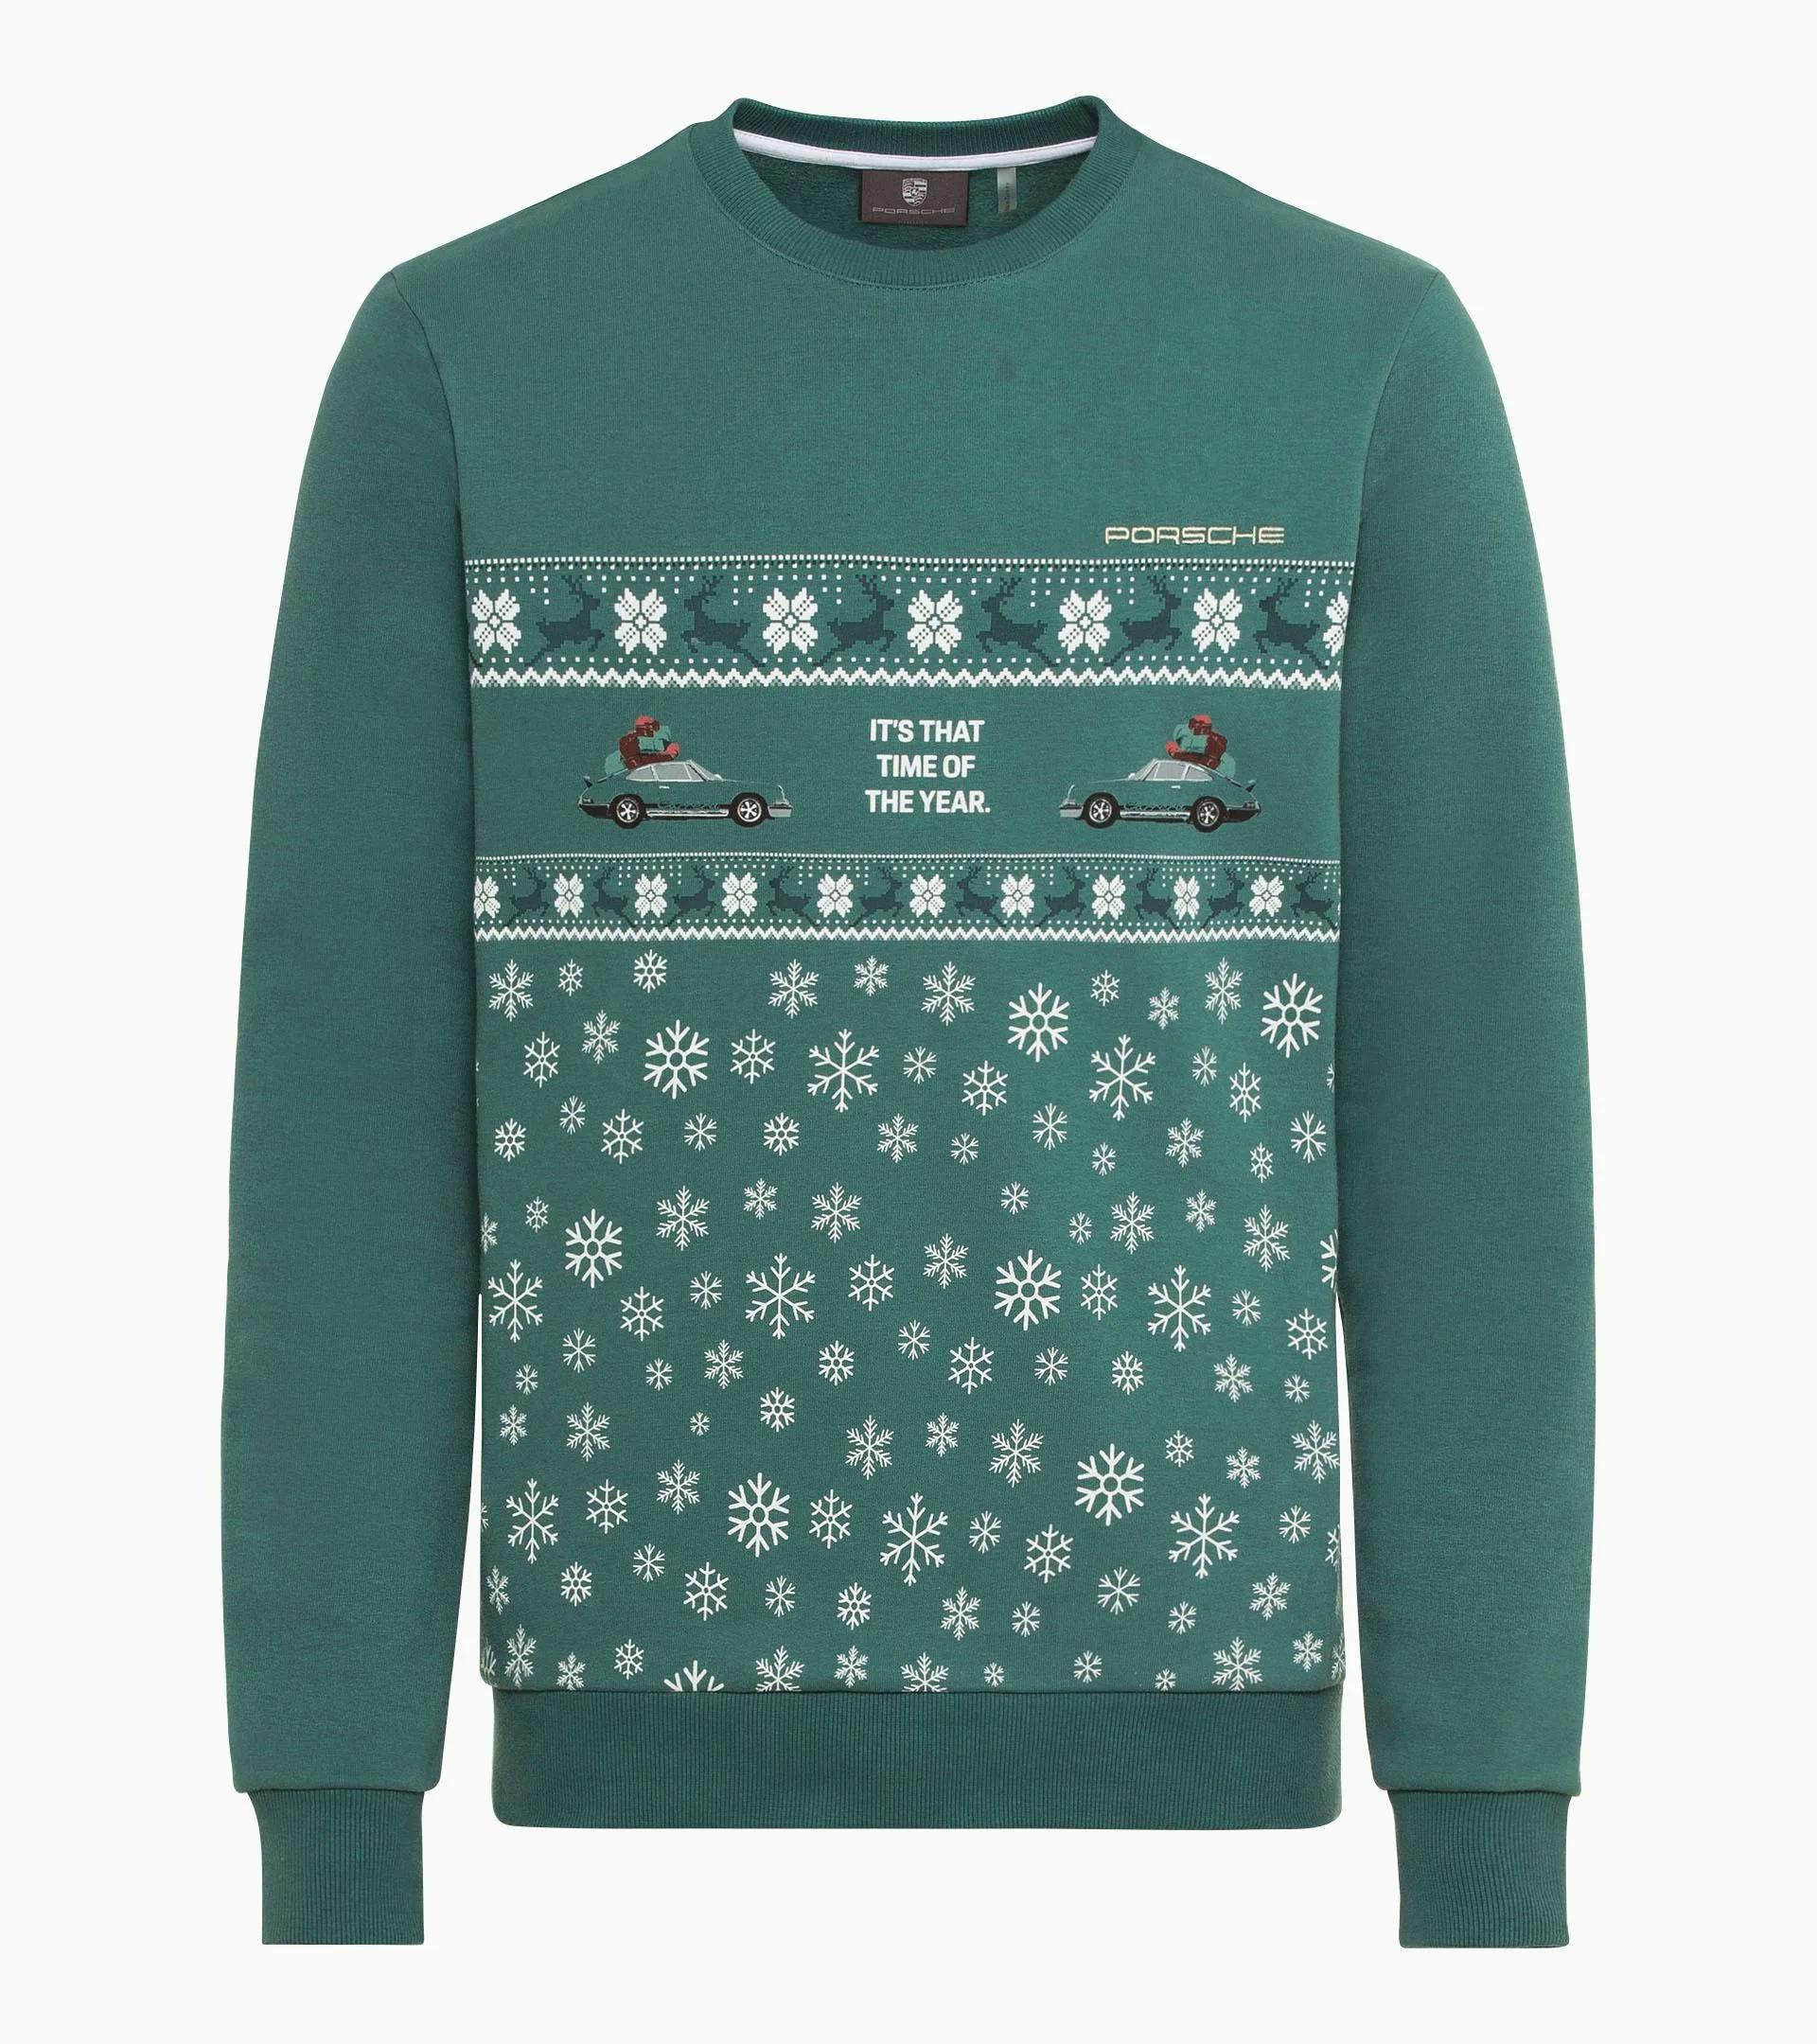 Sweatshirt Unisex – Christmas 1